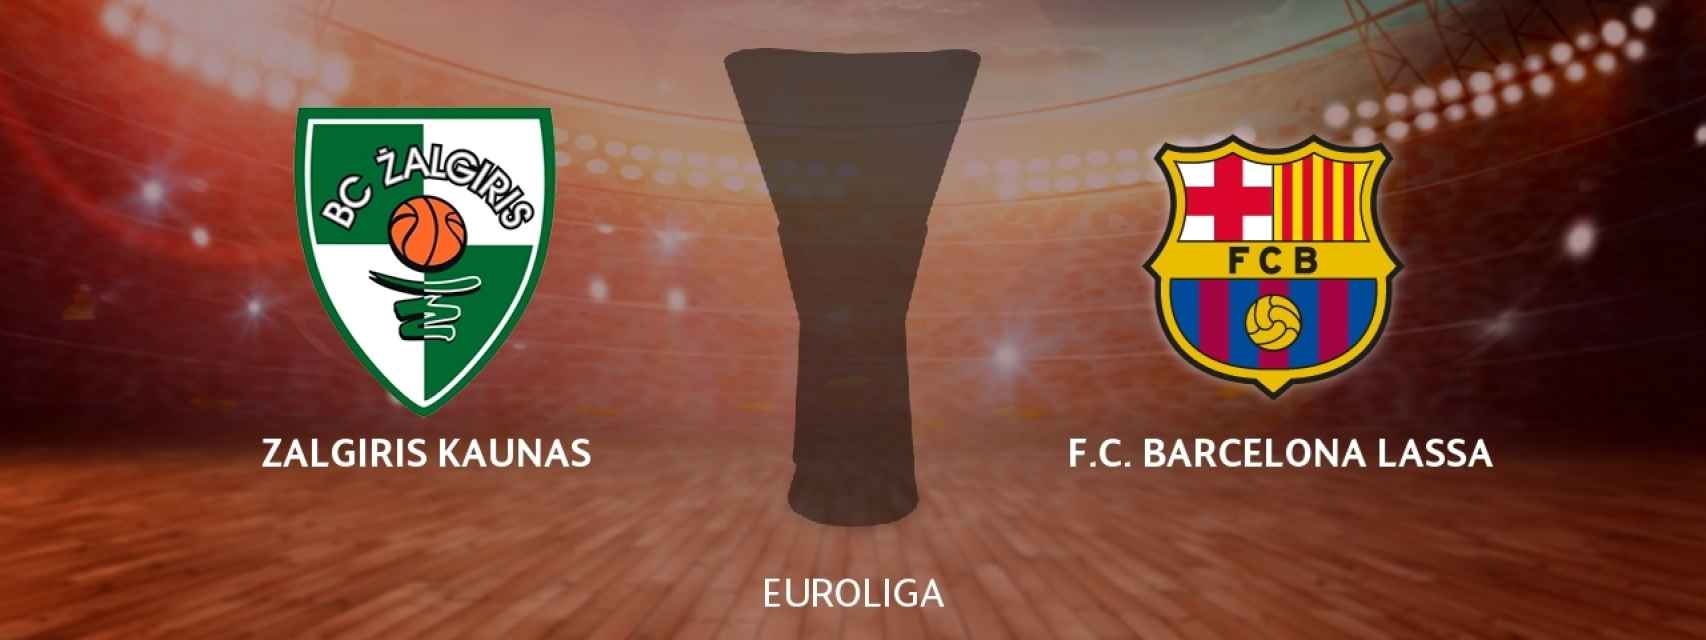 Zalgiris Kaunas - Barcelona Lassa, siga en directo el partido de Euroliga